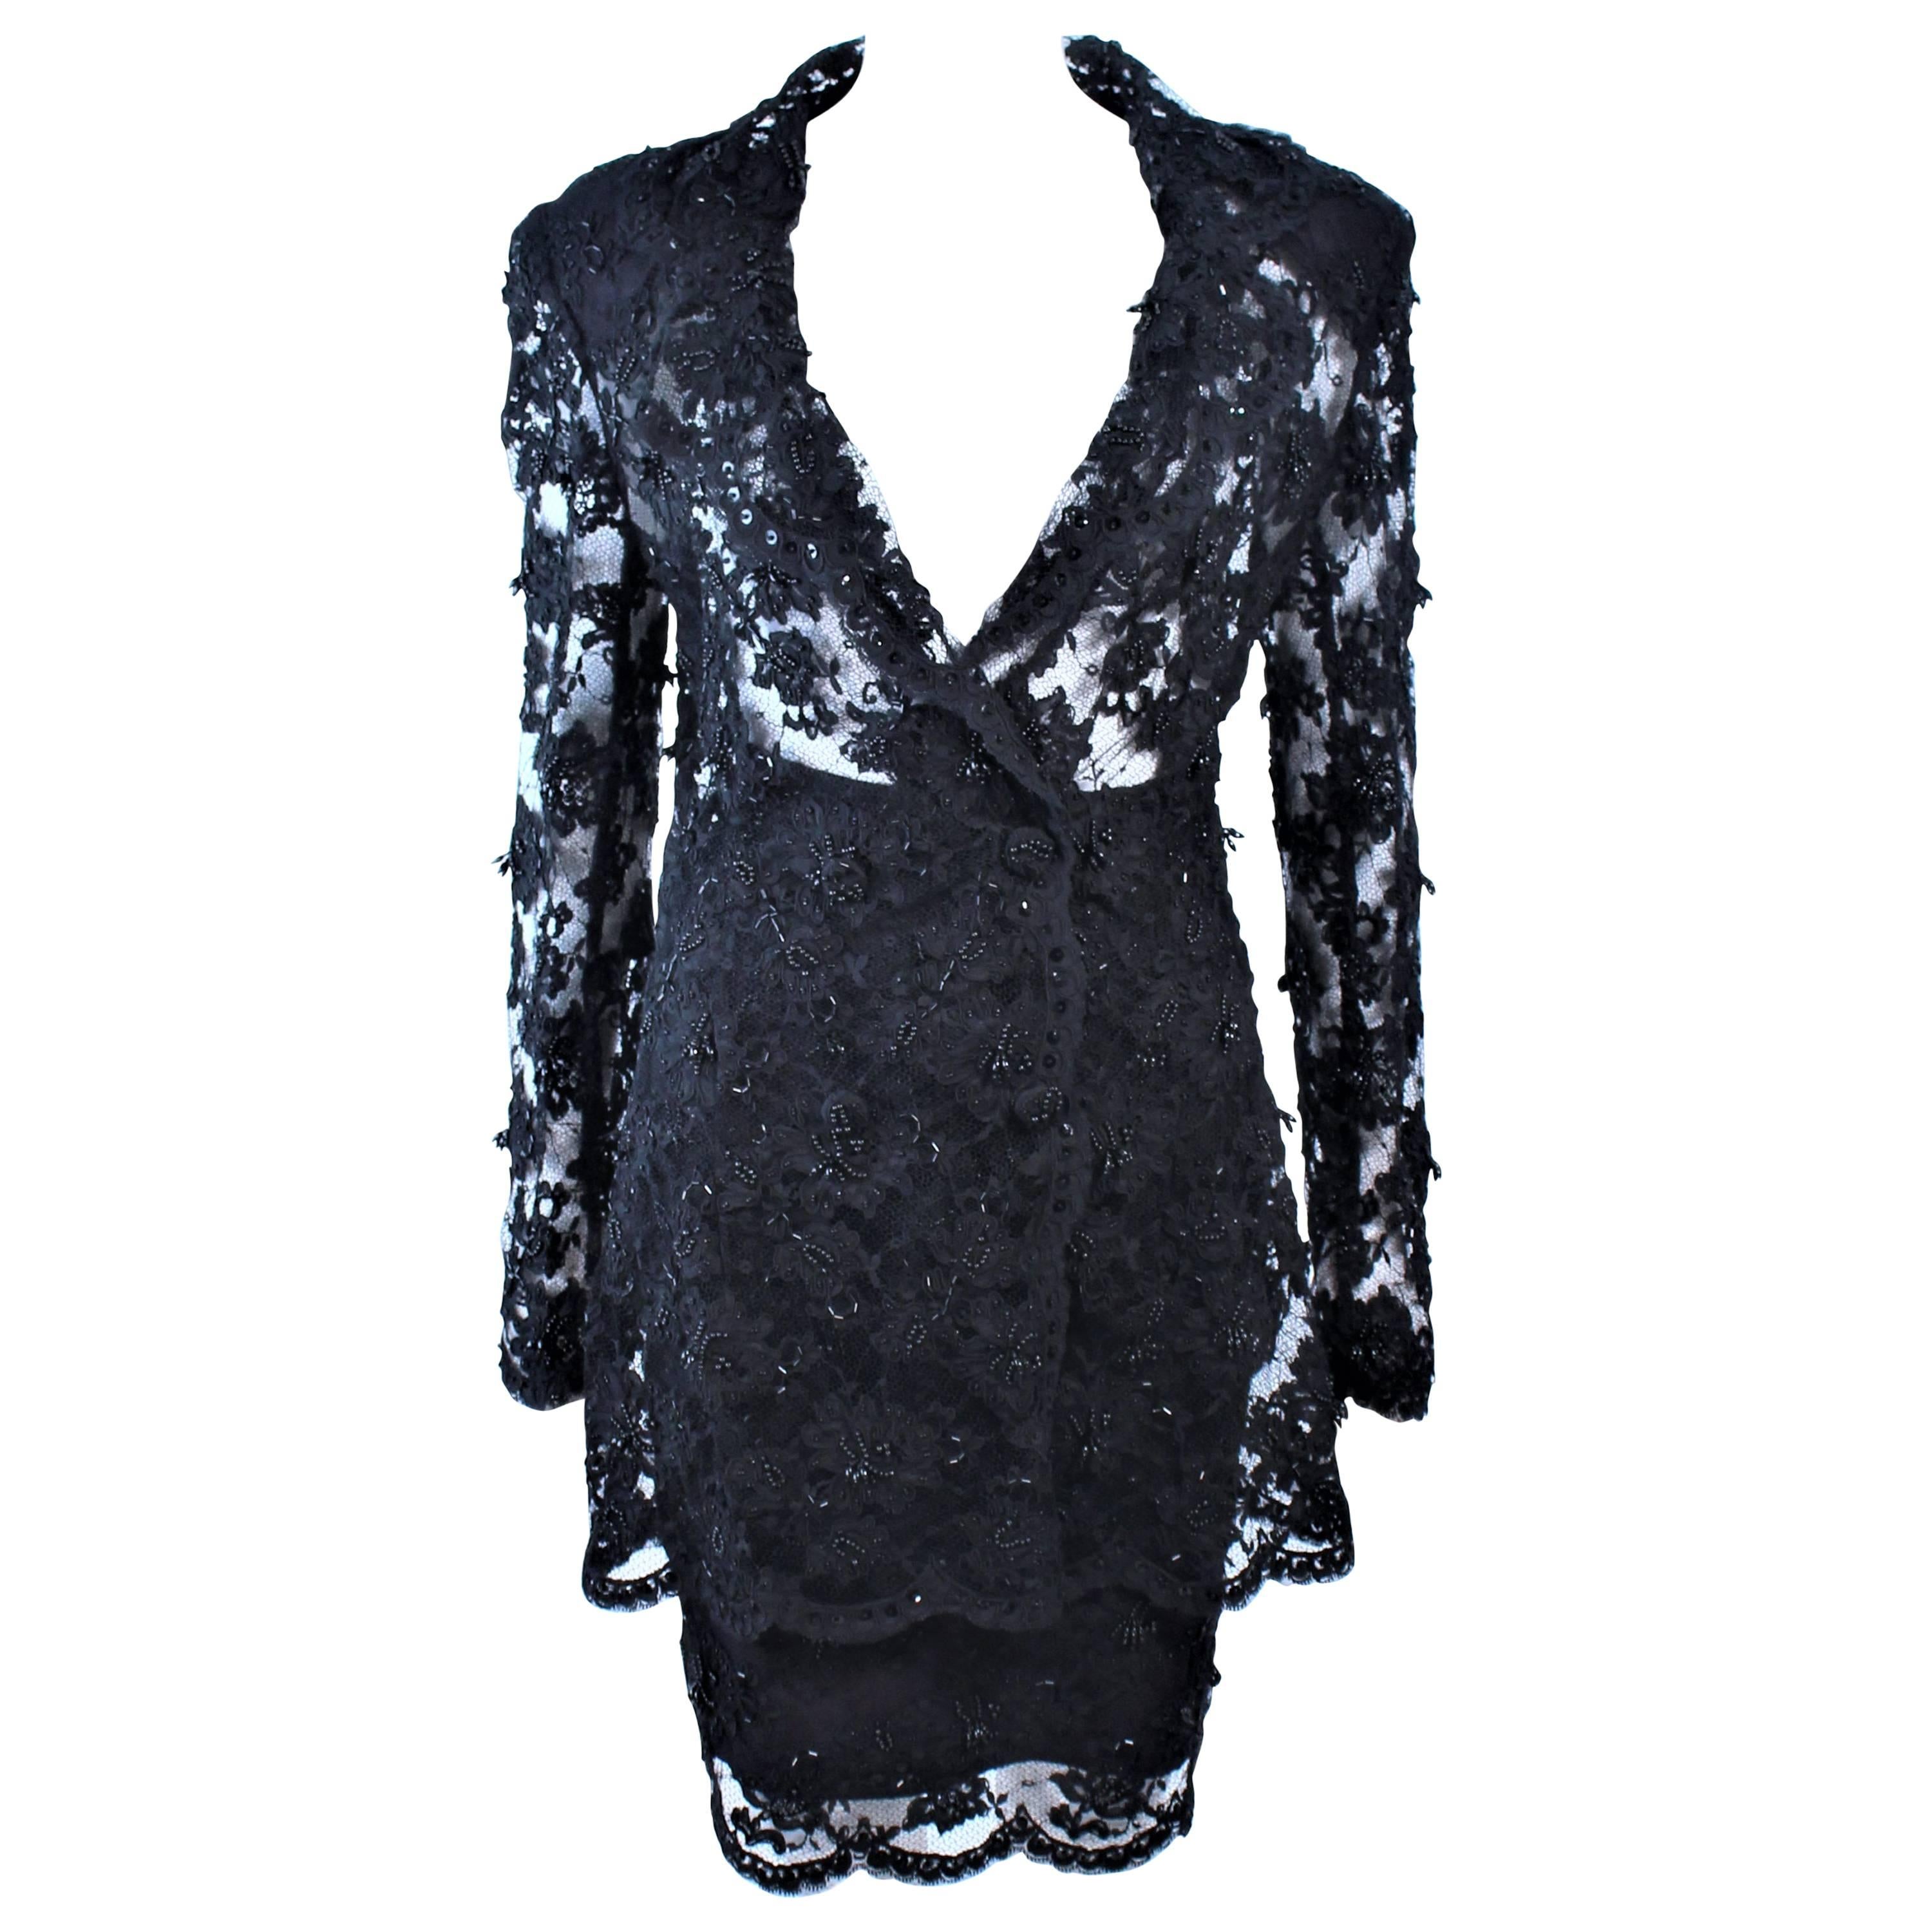 FETOUN Black Sequin Lace Skirt Suit Size 12 For Sale